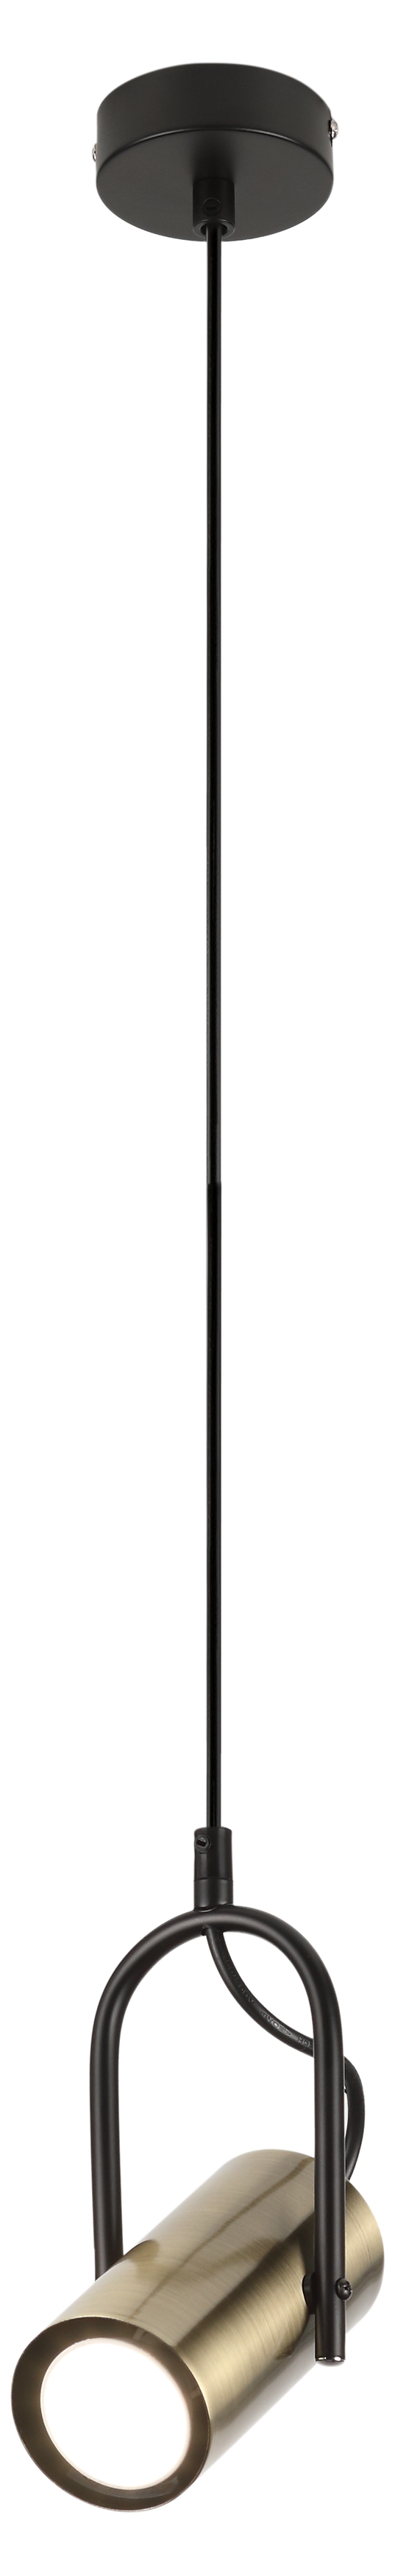 Светильник 8*8*80 см, 1*GU10 подвесной Rivoli Elfriede 3101-201, черный